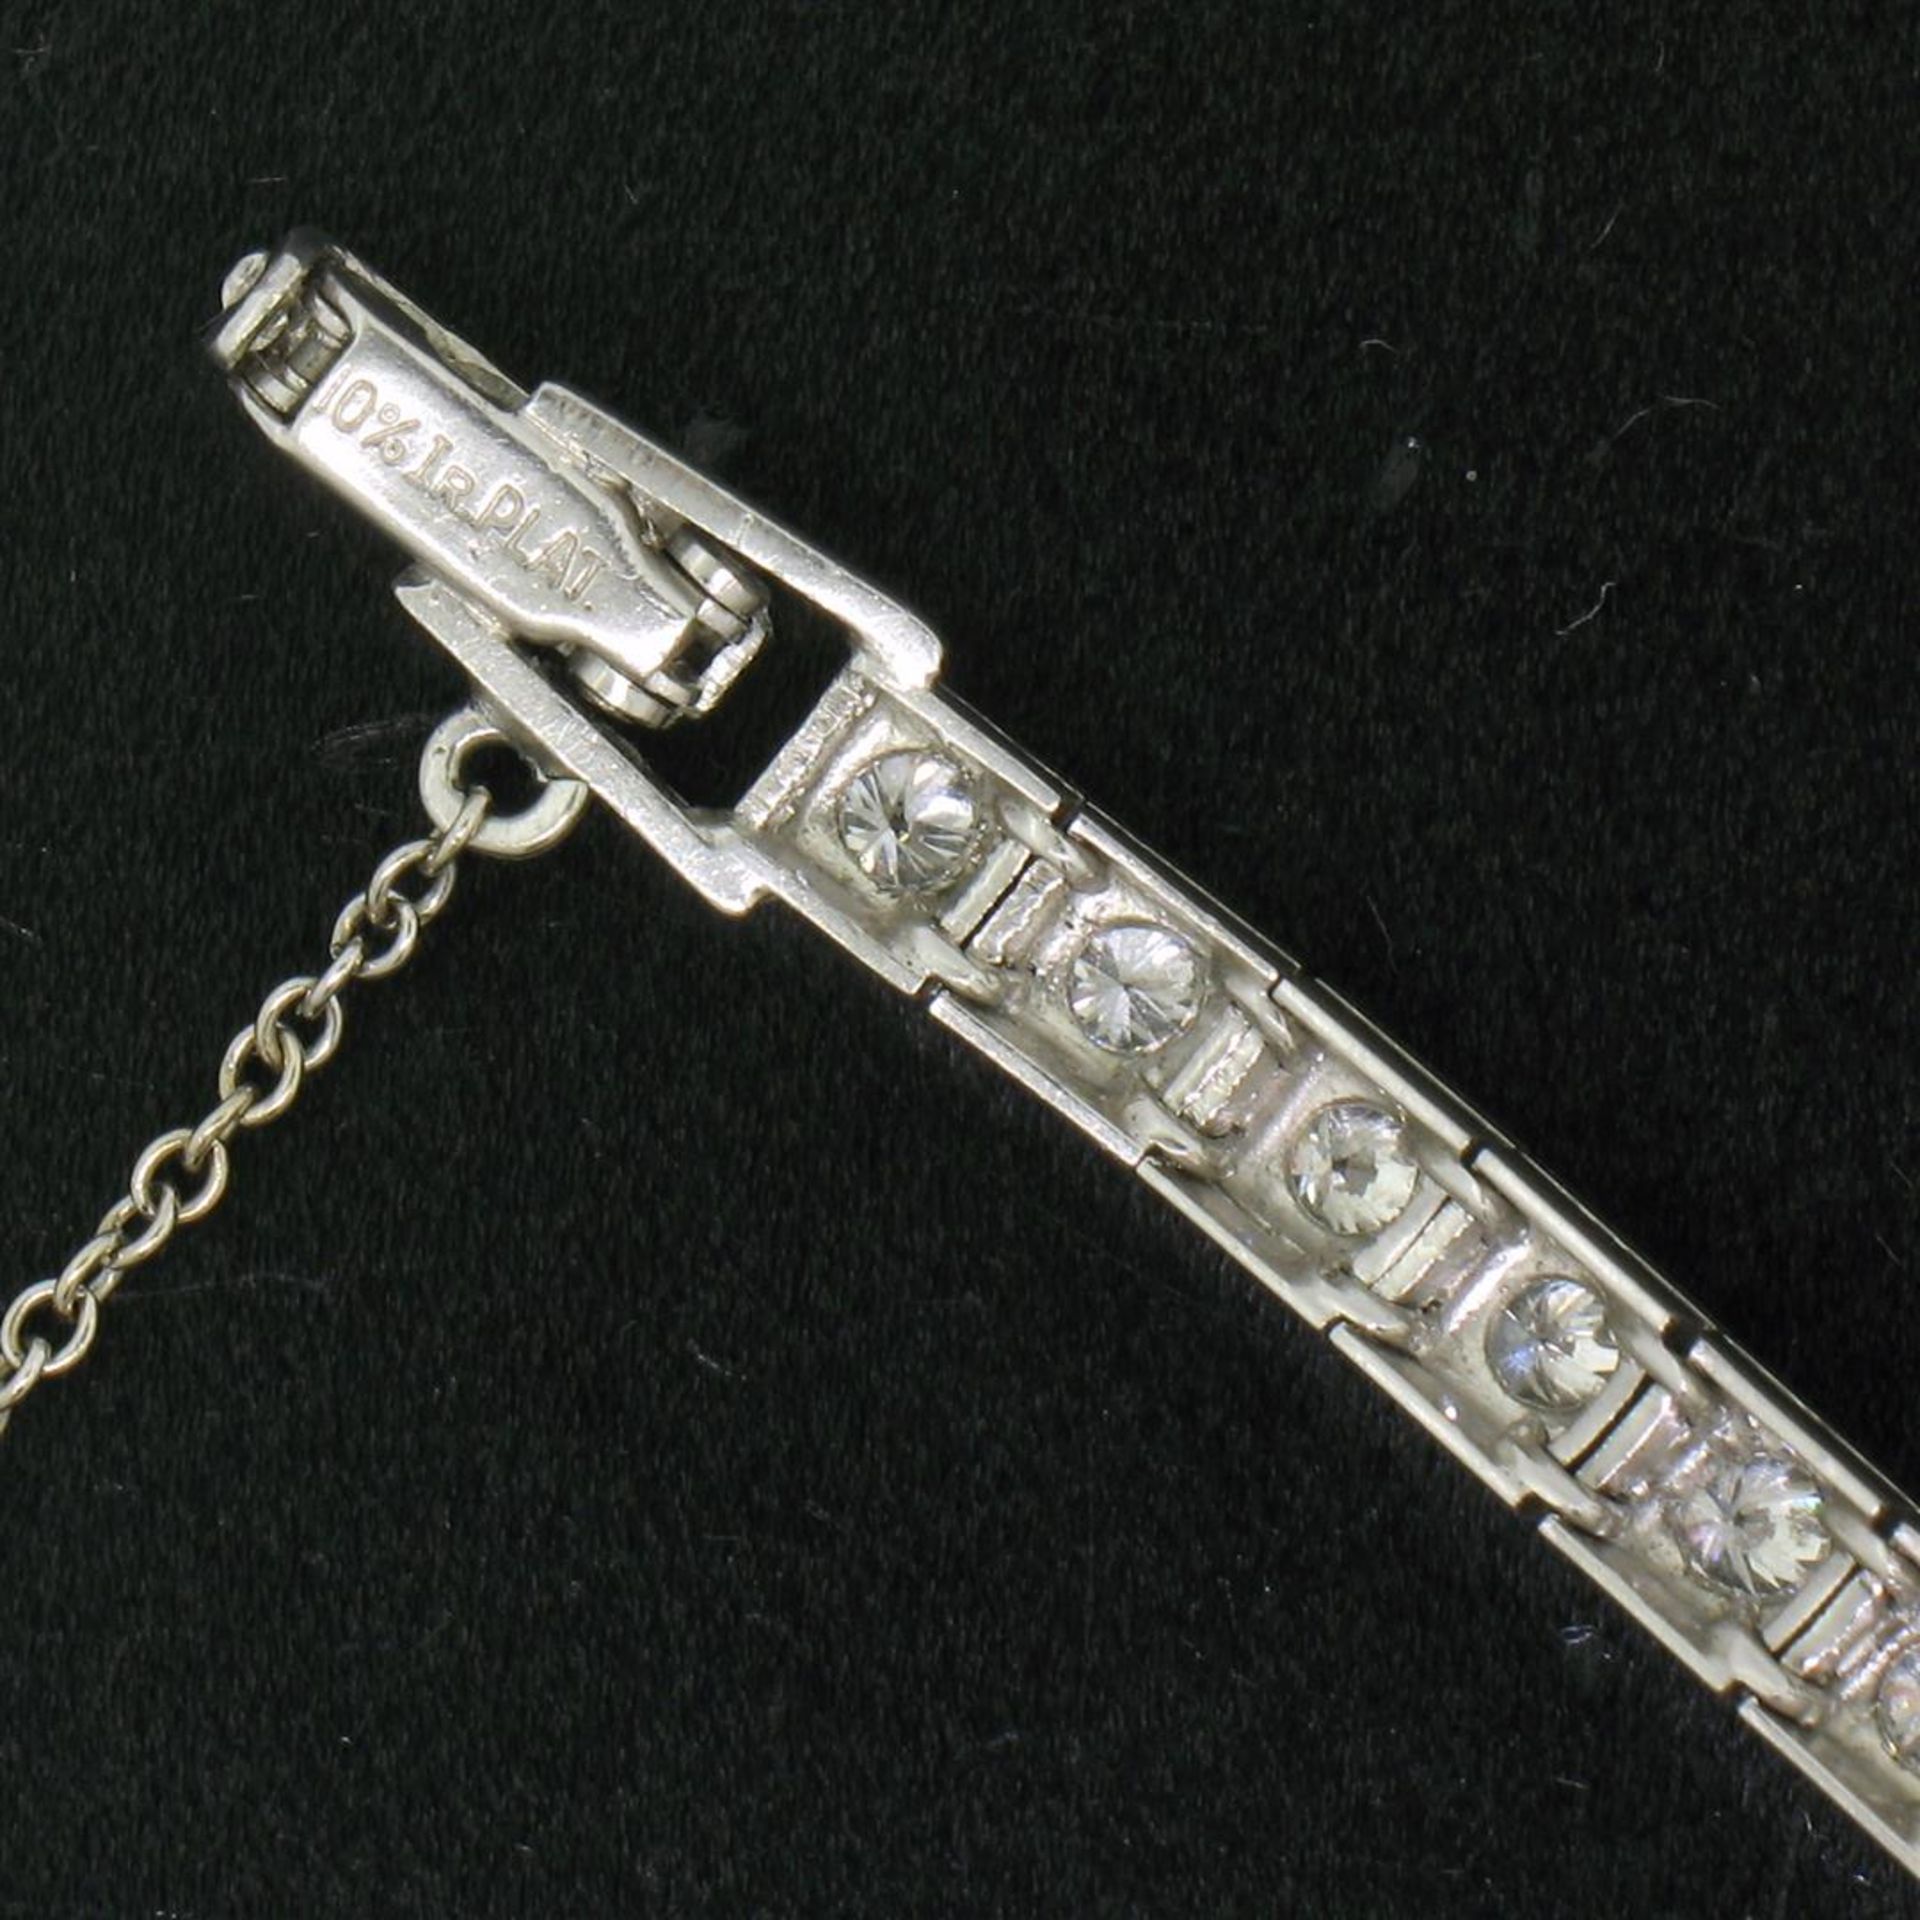 Antique Hamilton Platinum 17j 1.61ct Round Transitional Cut Diamond Ladies Watch - Image 9 of 9